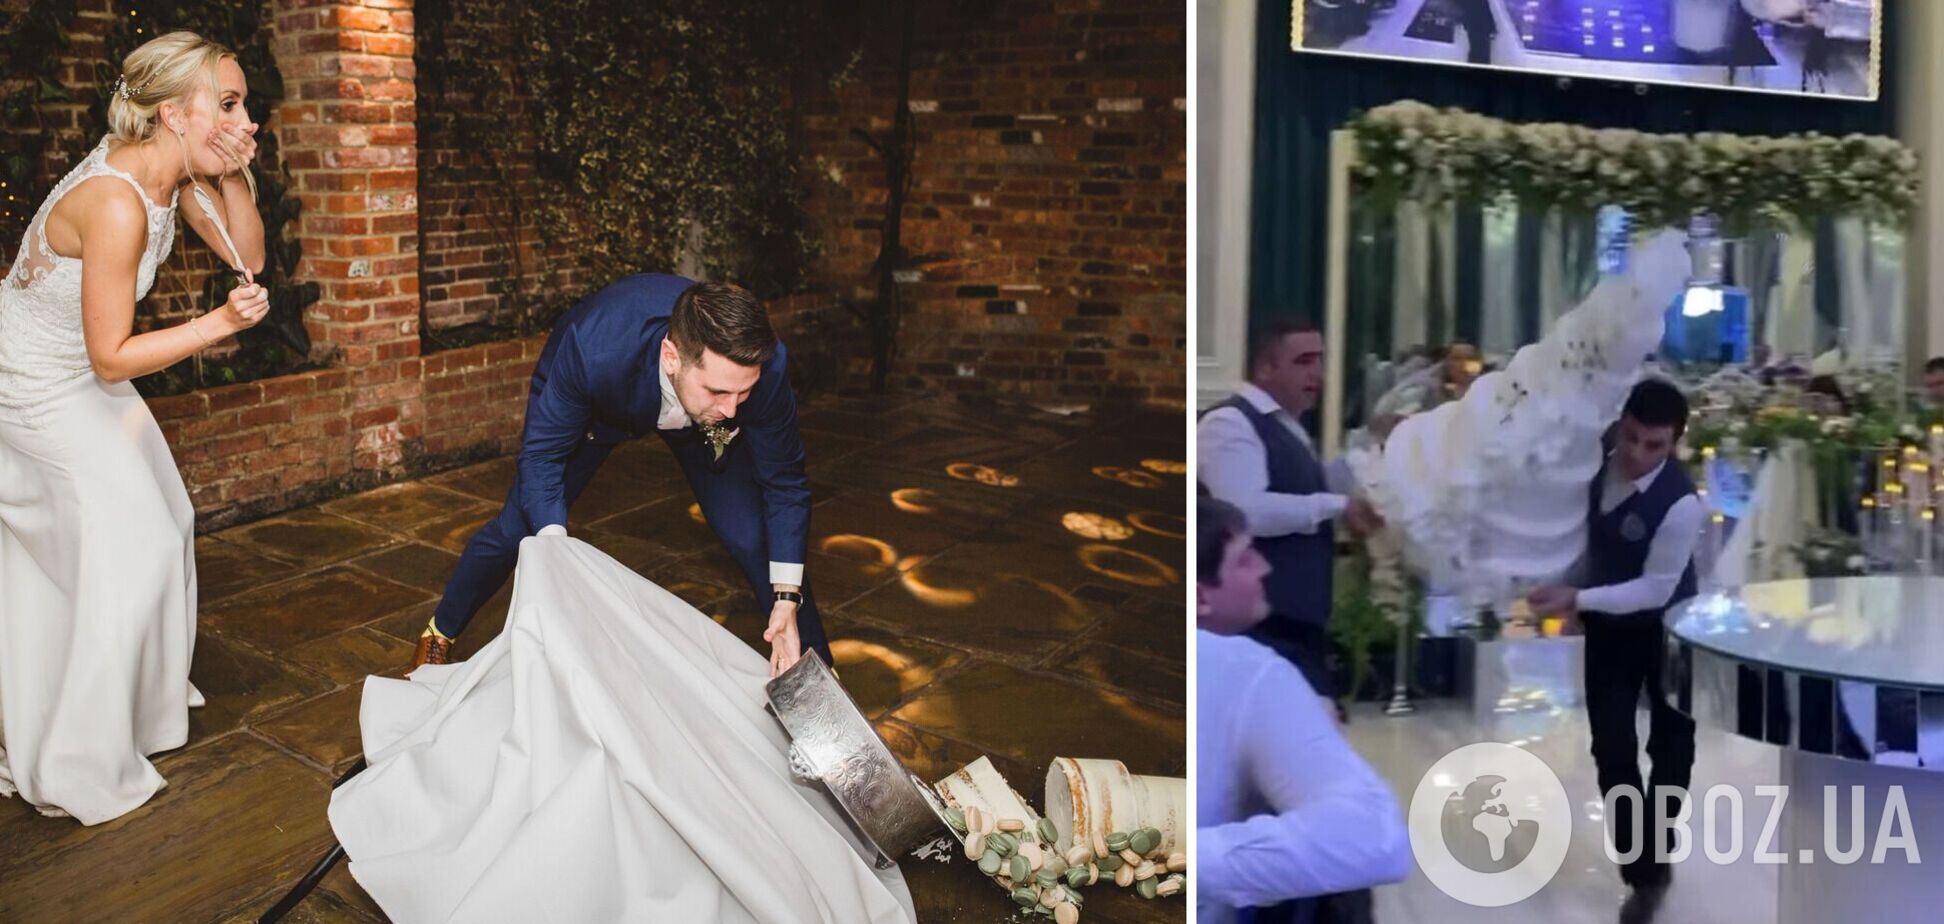 Співробітники готелю шокували наречену та нареченого, впустивши весільний торт. Вірусне відео